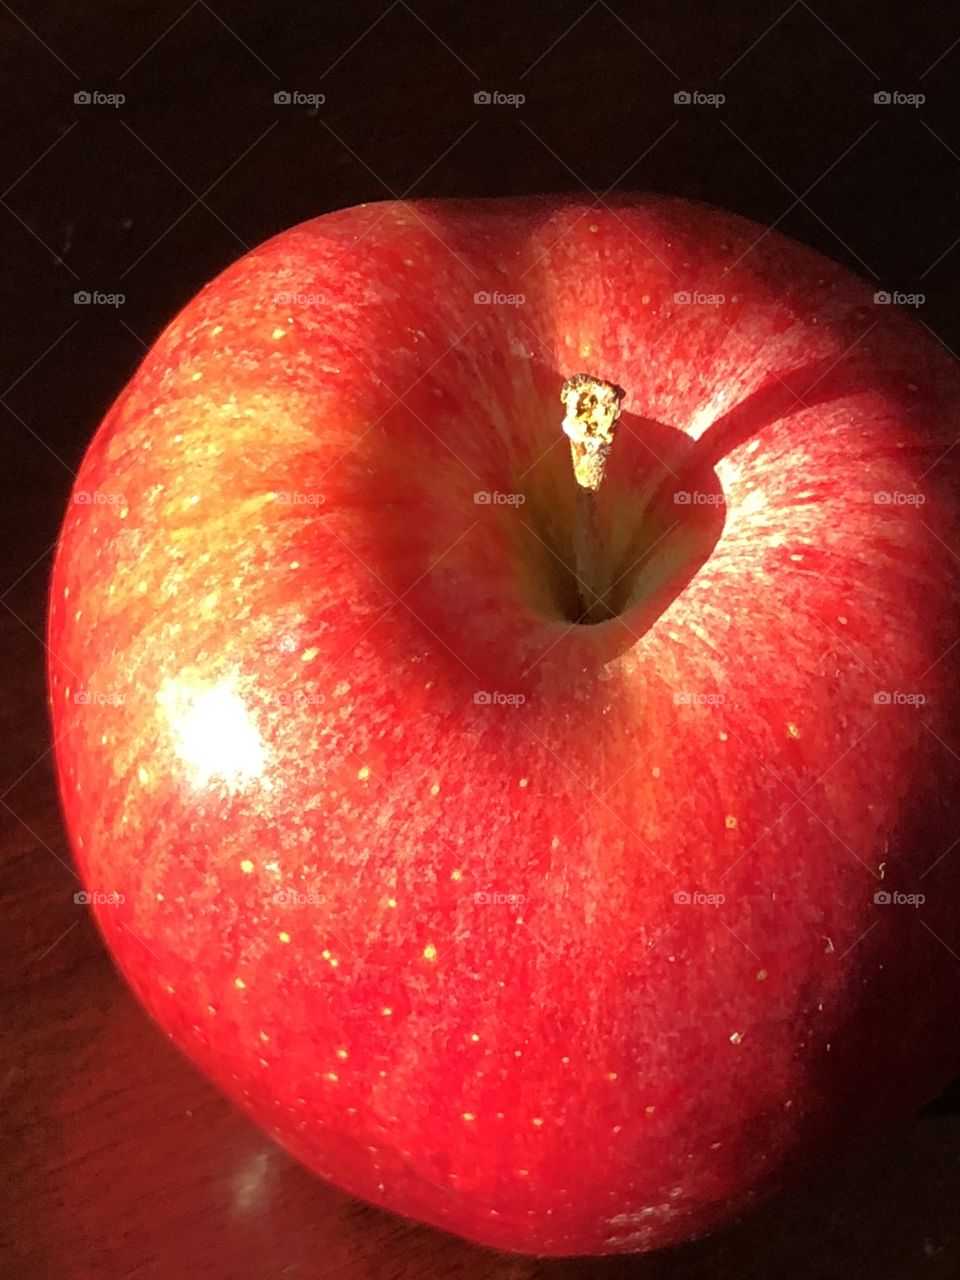 Red juicy apple 